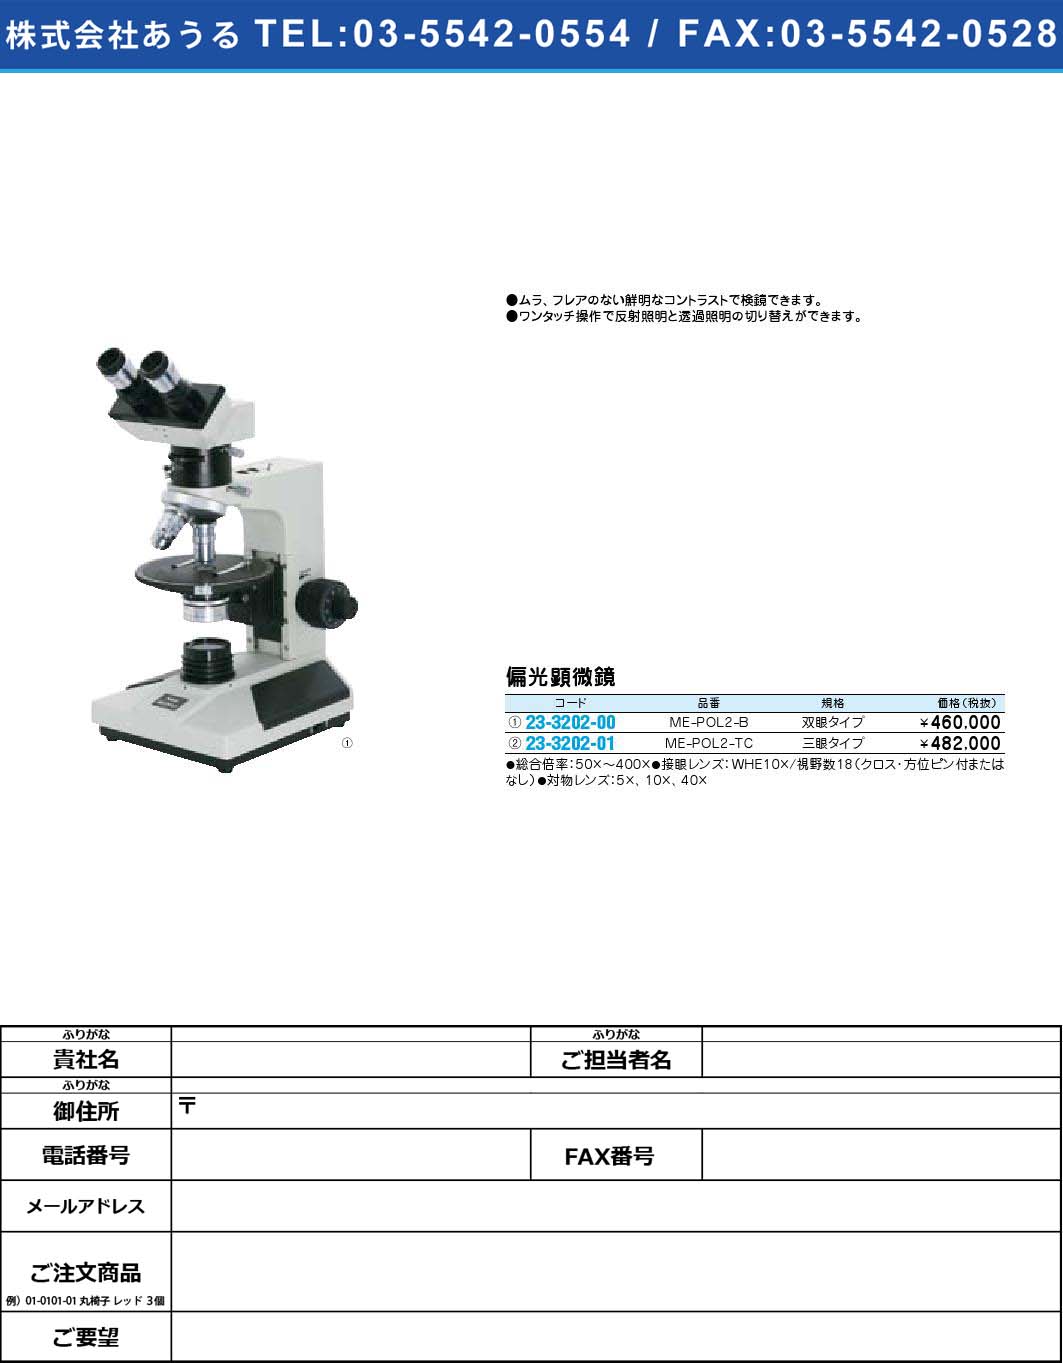 (23-3202-00)偏光顕微鏡 ME-POL2-B(23-3202-00)【1個単位】【2009年カタログ商品】